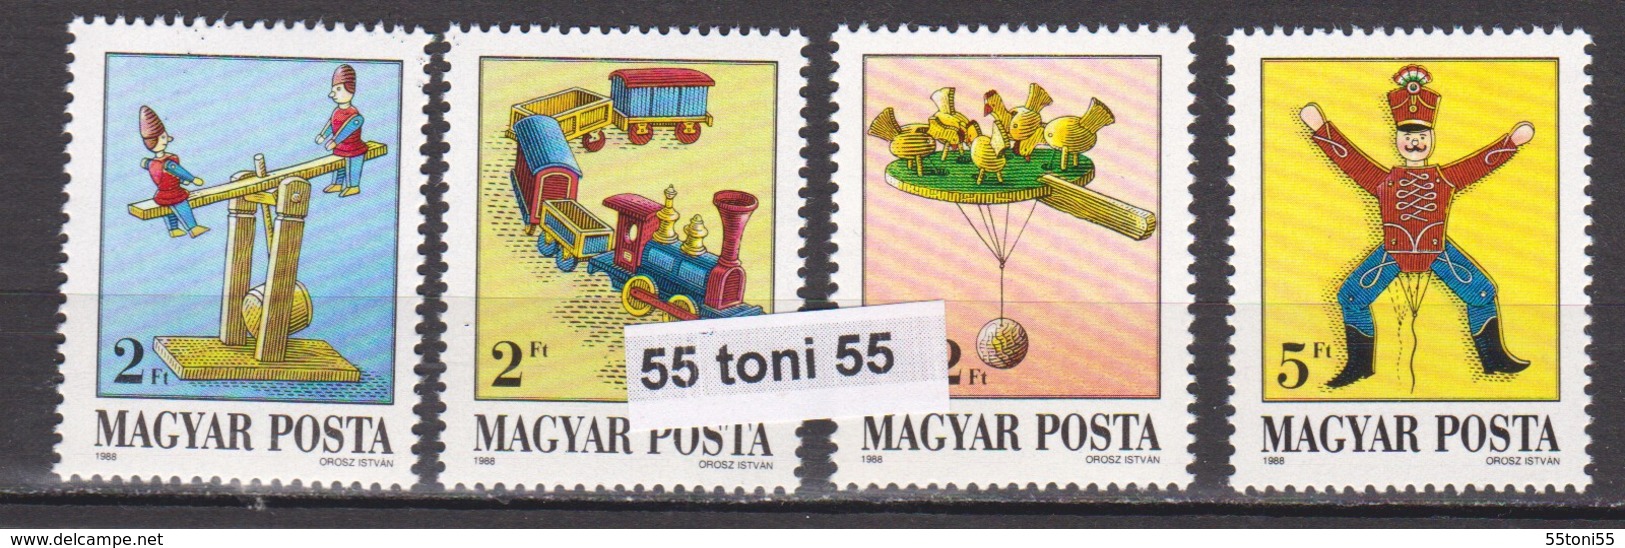 1988  Art TOYS Mi 3978/81  4v.- MNH HUNGARY - Muñecas